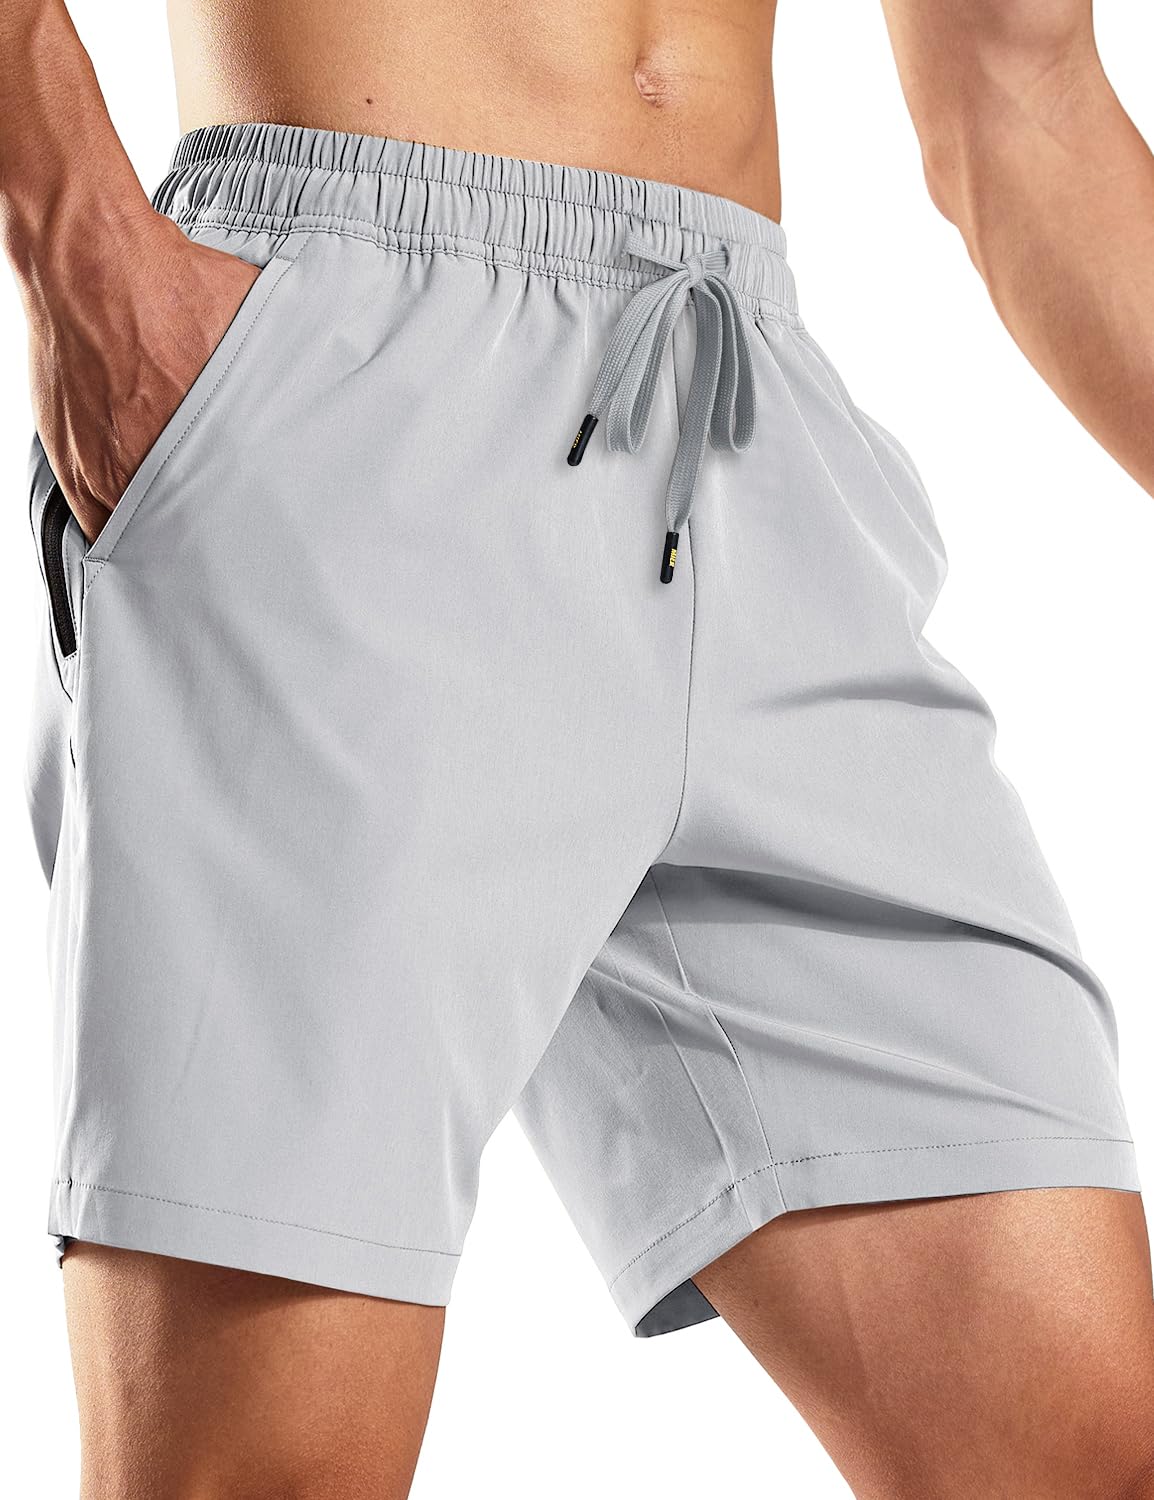 Pantalones cortos para correr de secado rápido para hombre con bolsillos con cremallera de 7 pulgadas